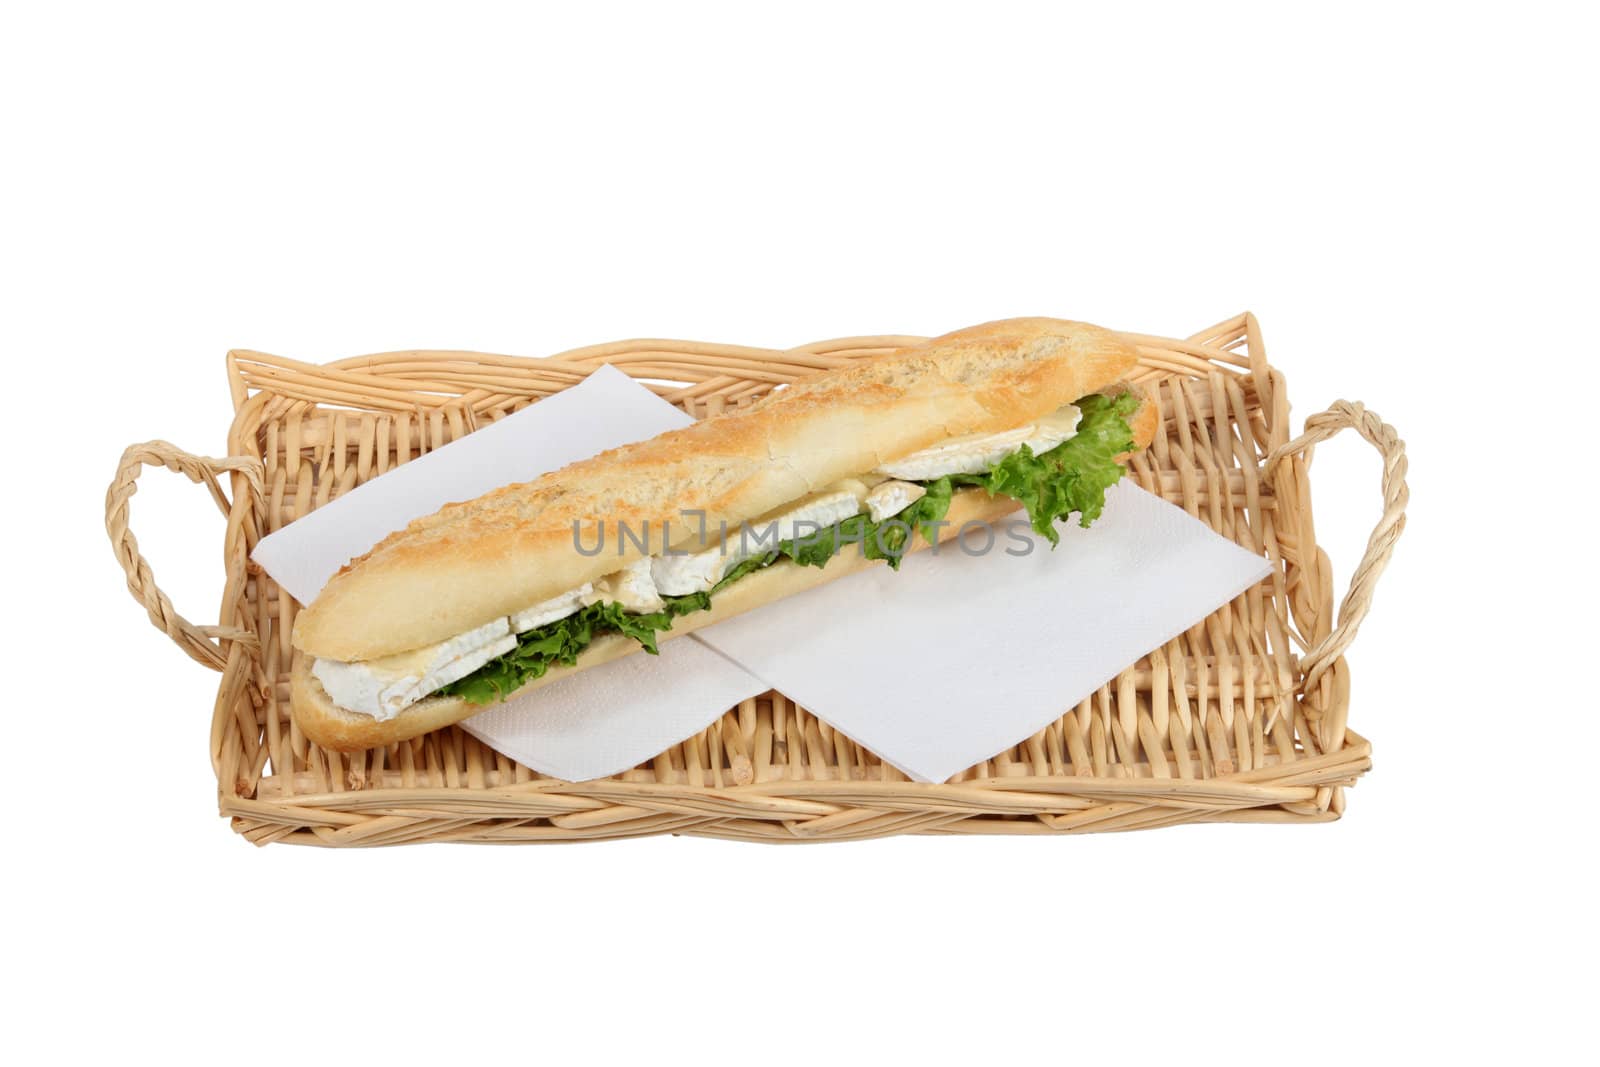 Sandwich on a wicker tray by phovoir